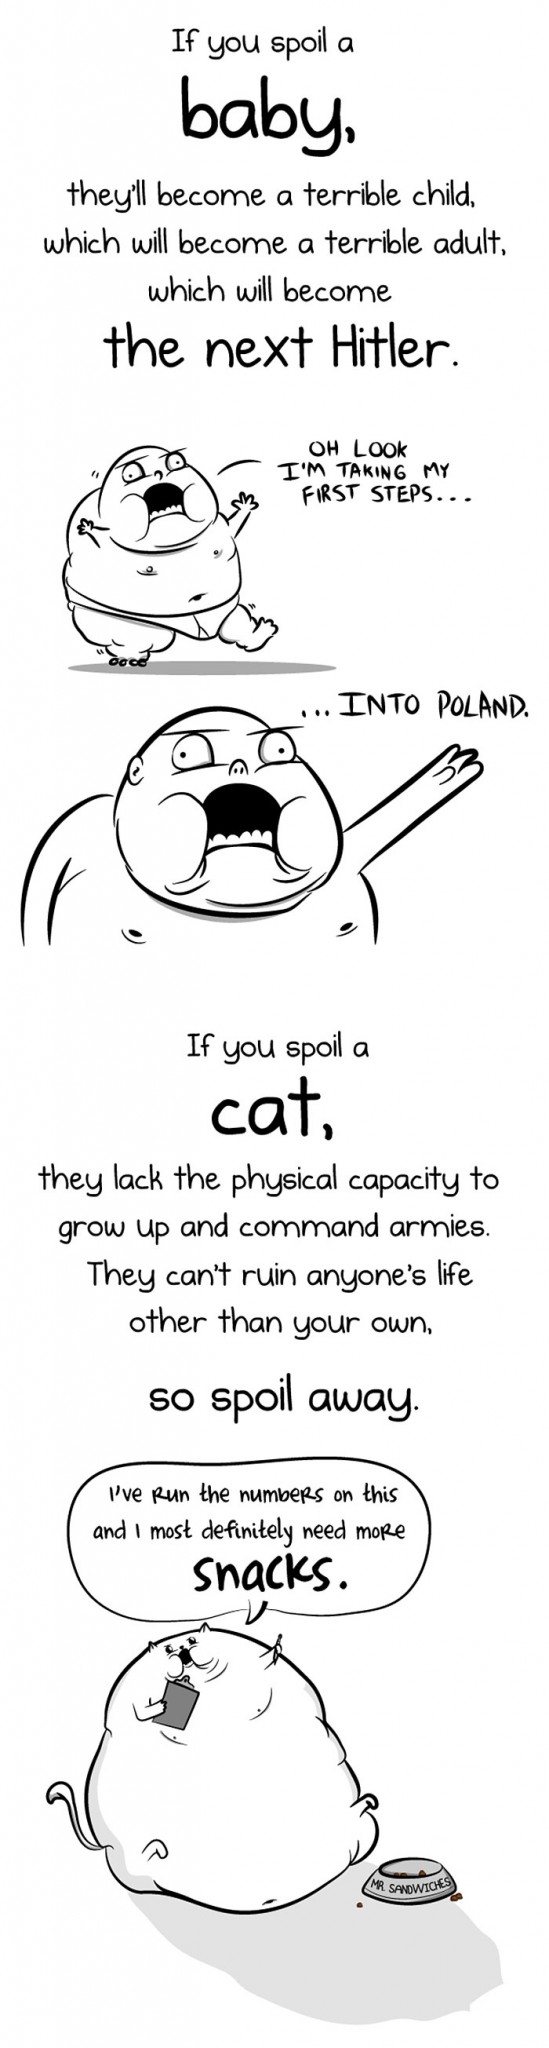 funny-illustrations-baby-vs-cat-hilarious-comics (5)